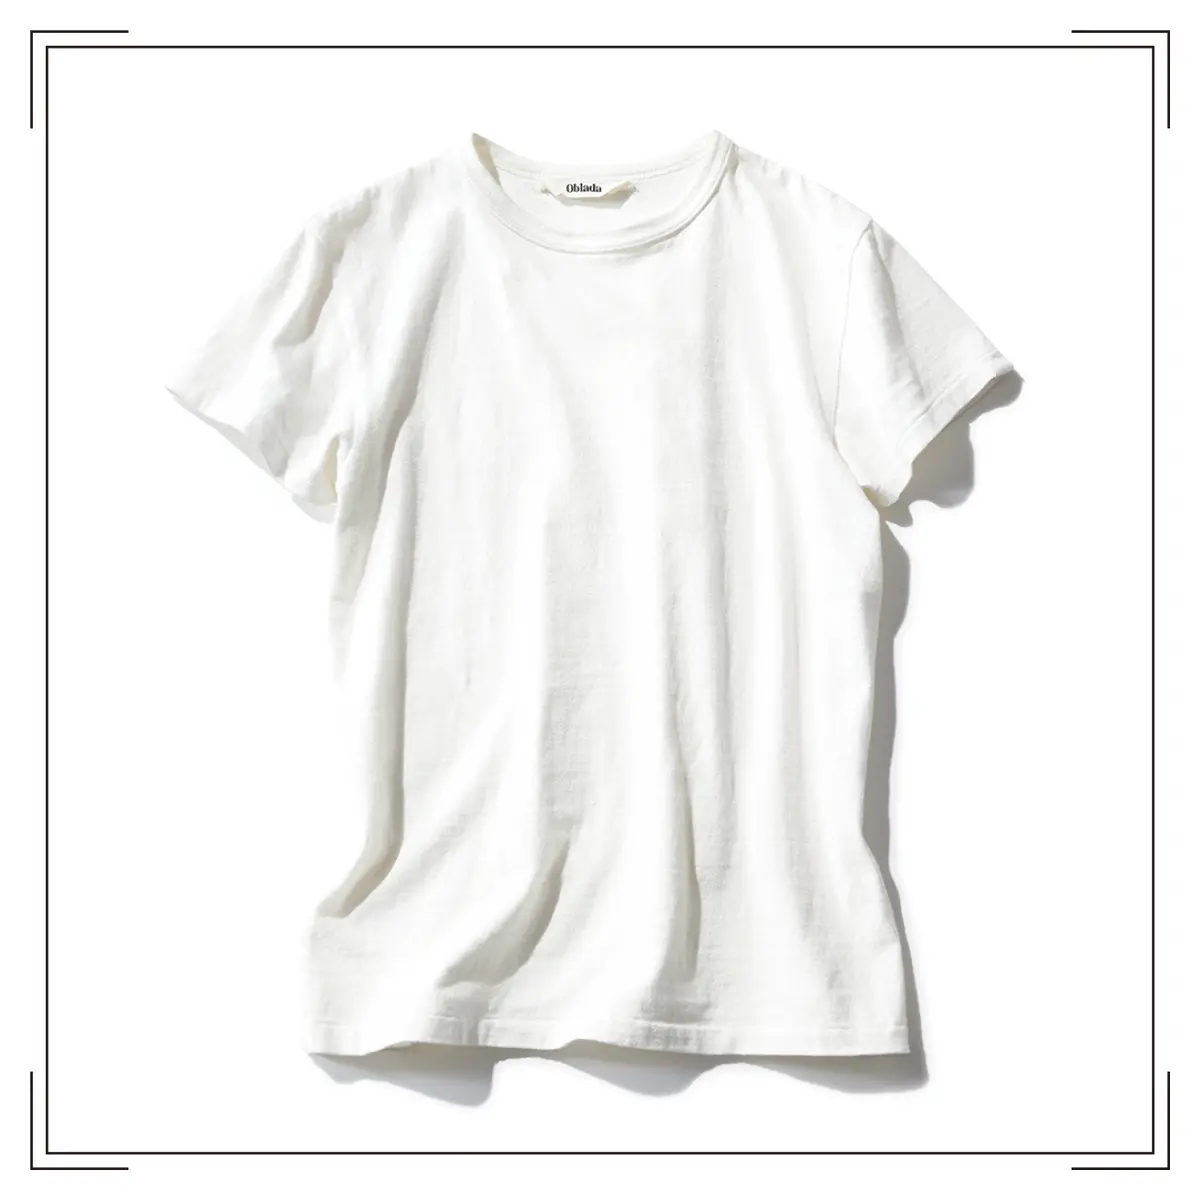 『オブラダ』の白Tシャツ